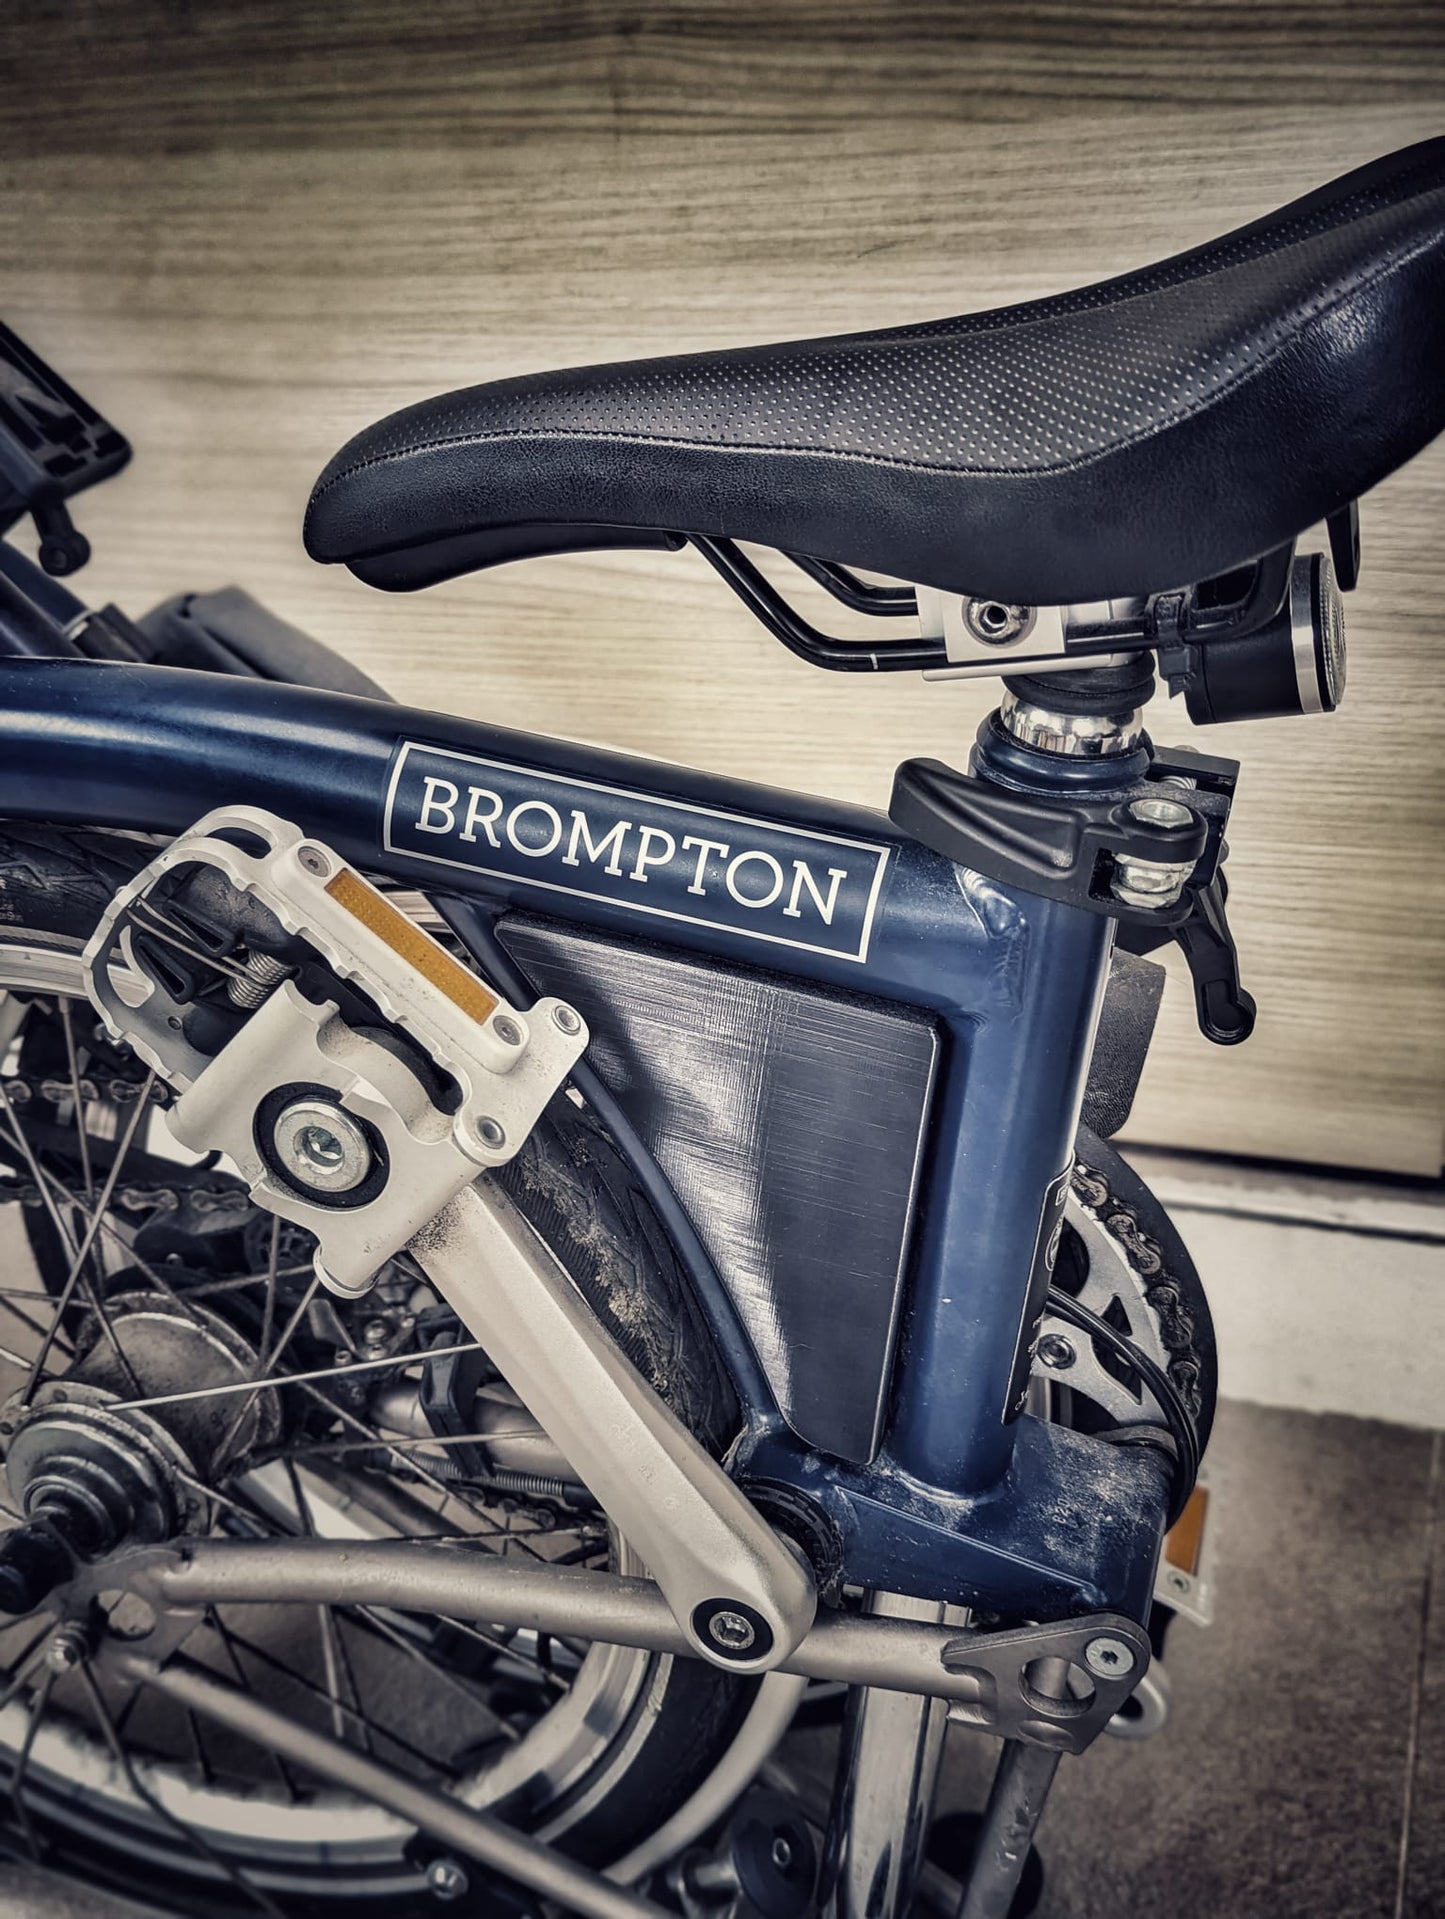 Aero Triangle Pouch for Brompton bike